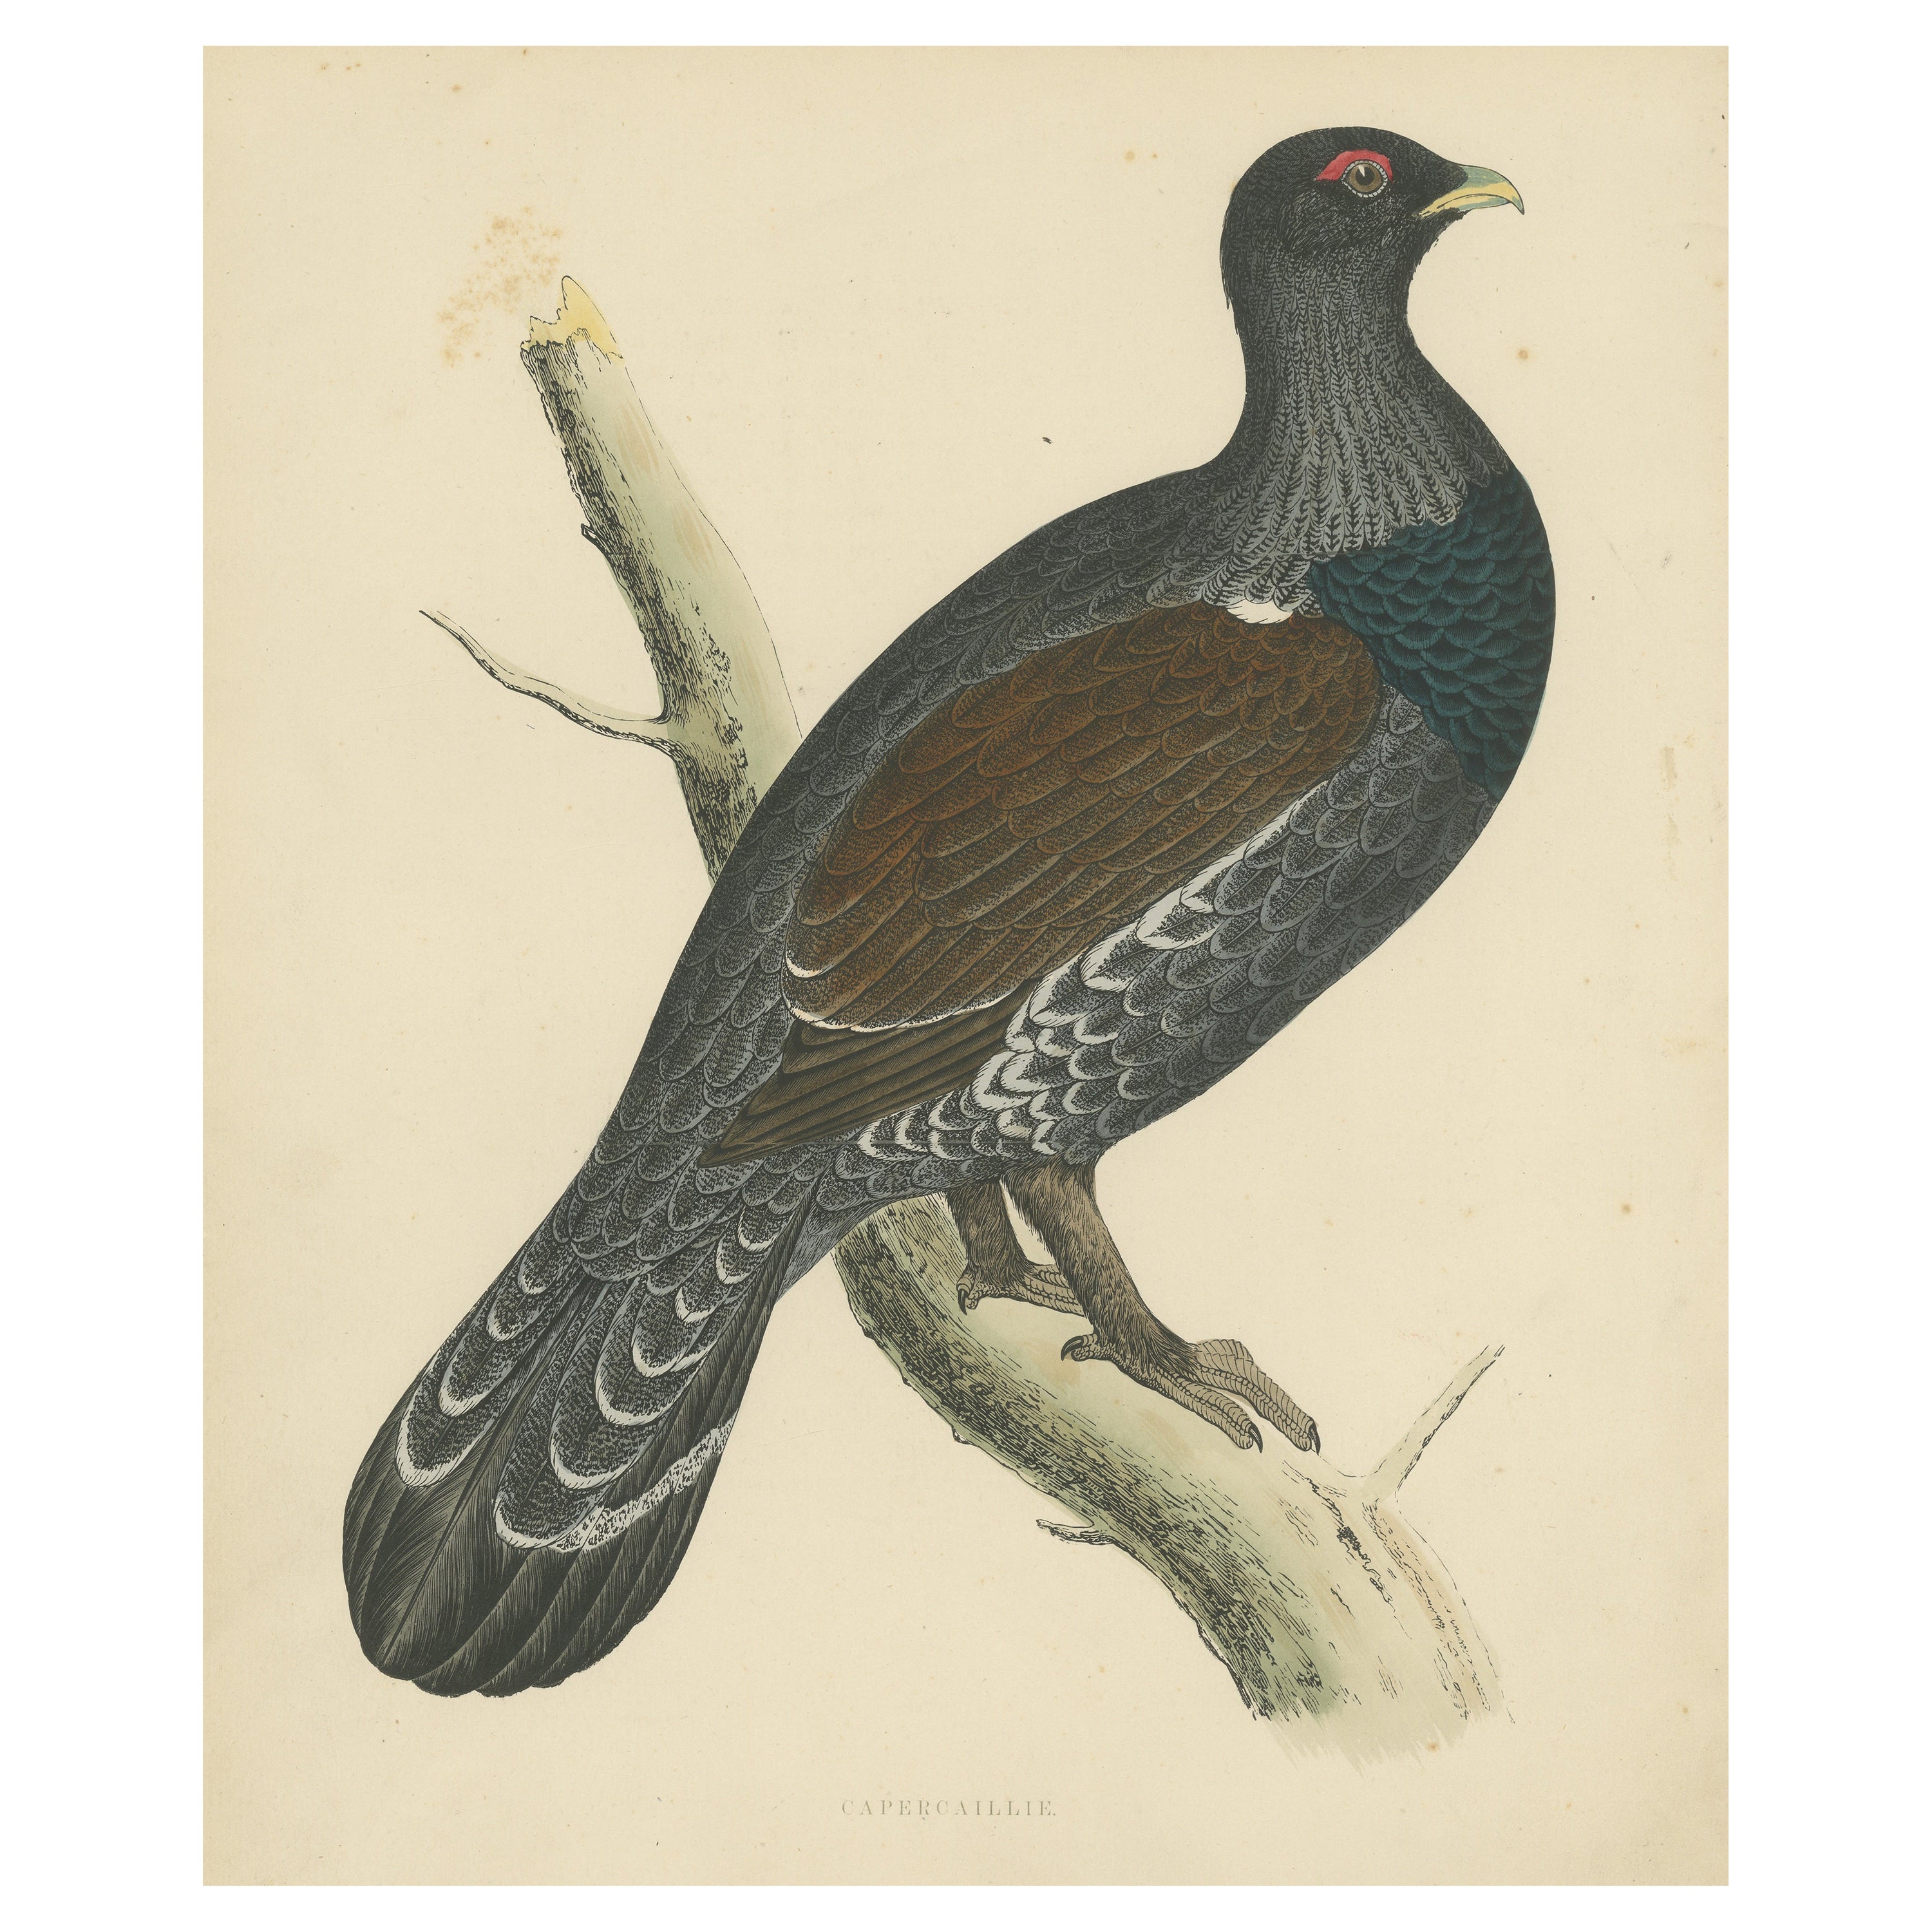 Original Antique Print of a Capercaillie Bird